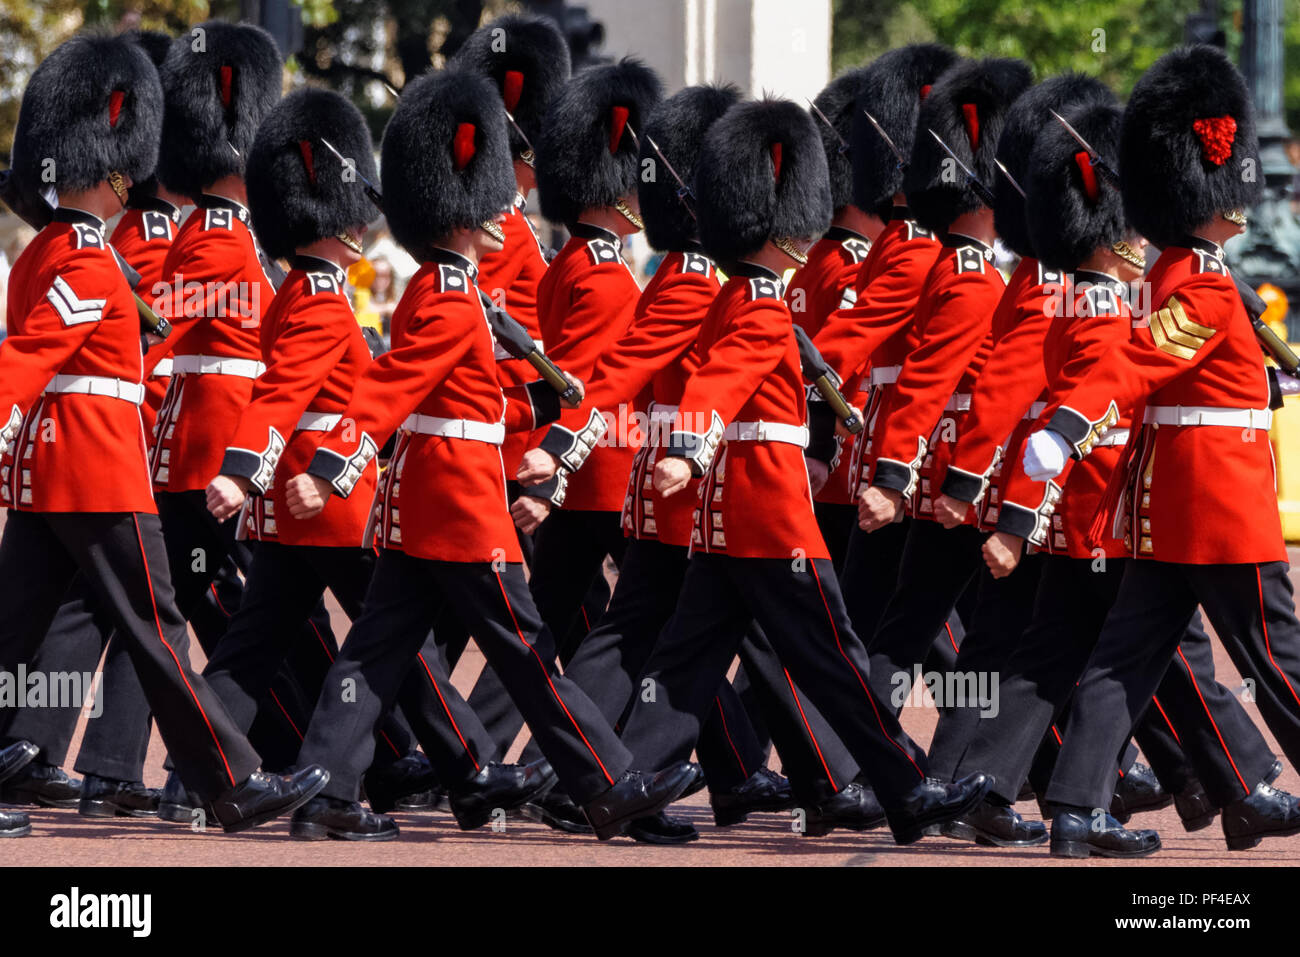 Cérémonie de la relève de la garde à l'extérieur de Buckingham Palace, Londres Angleterre Royaume-Uni UK Banque D'Images